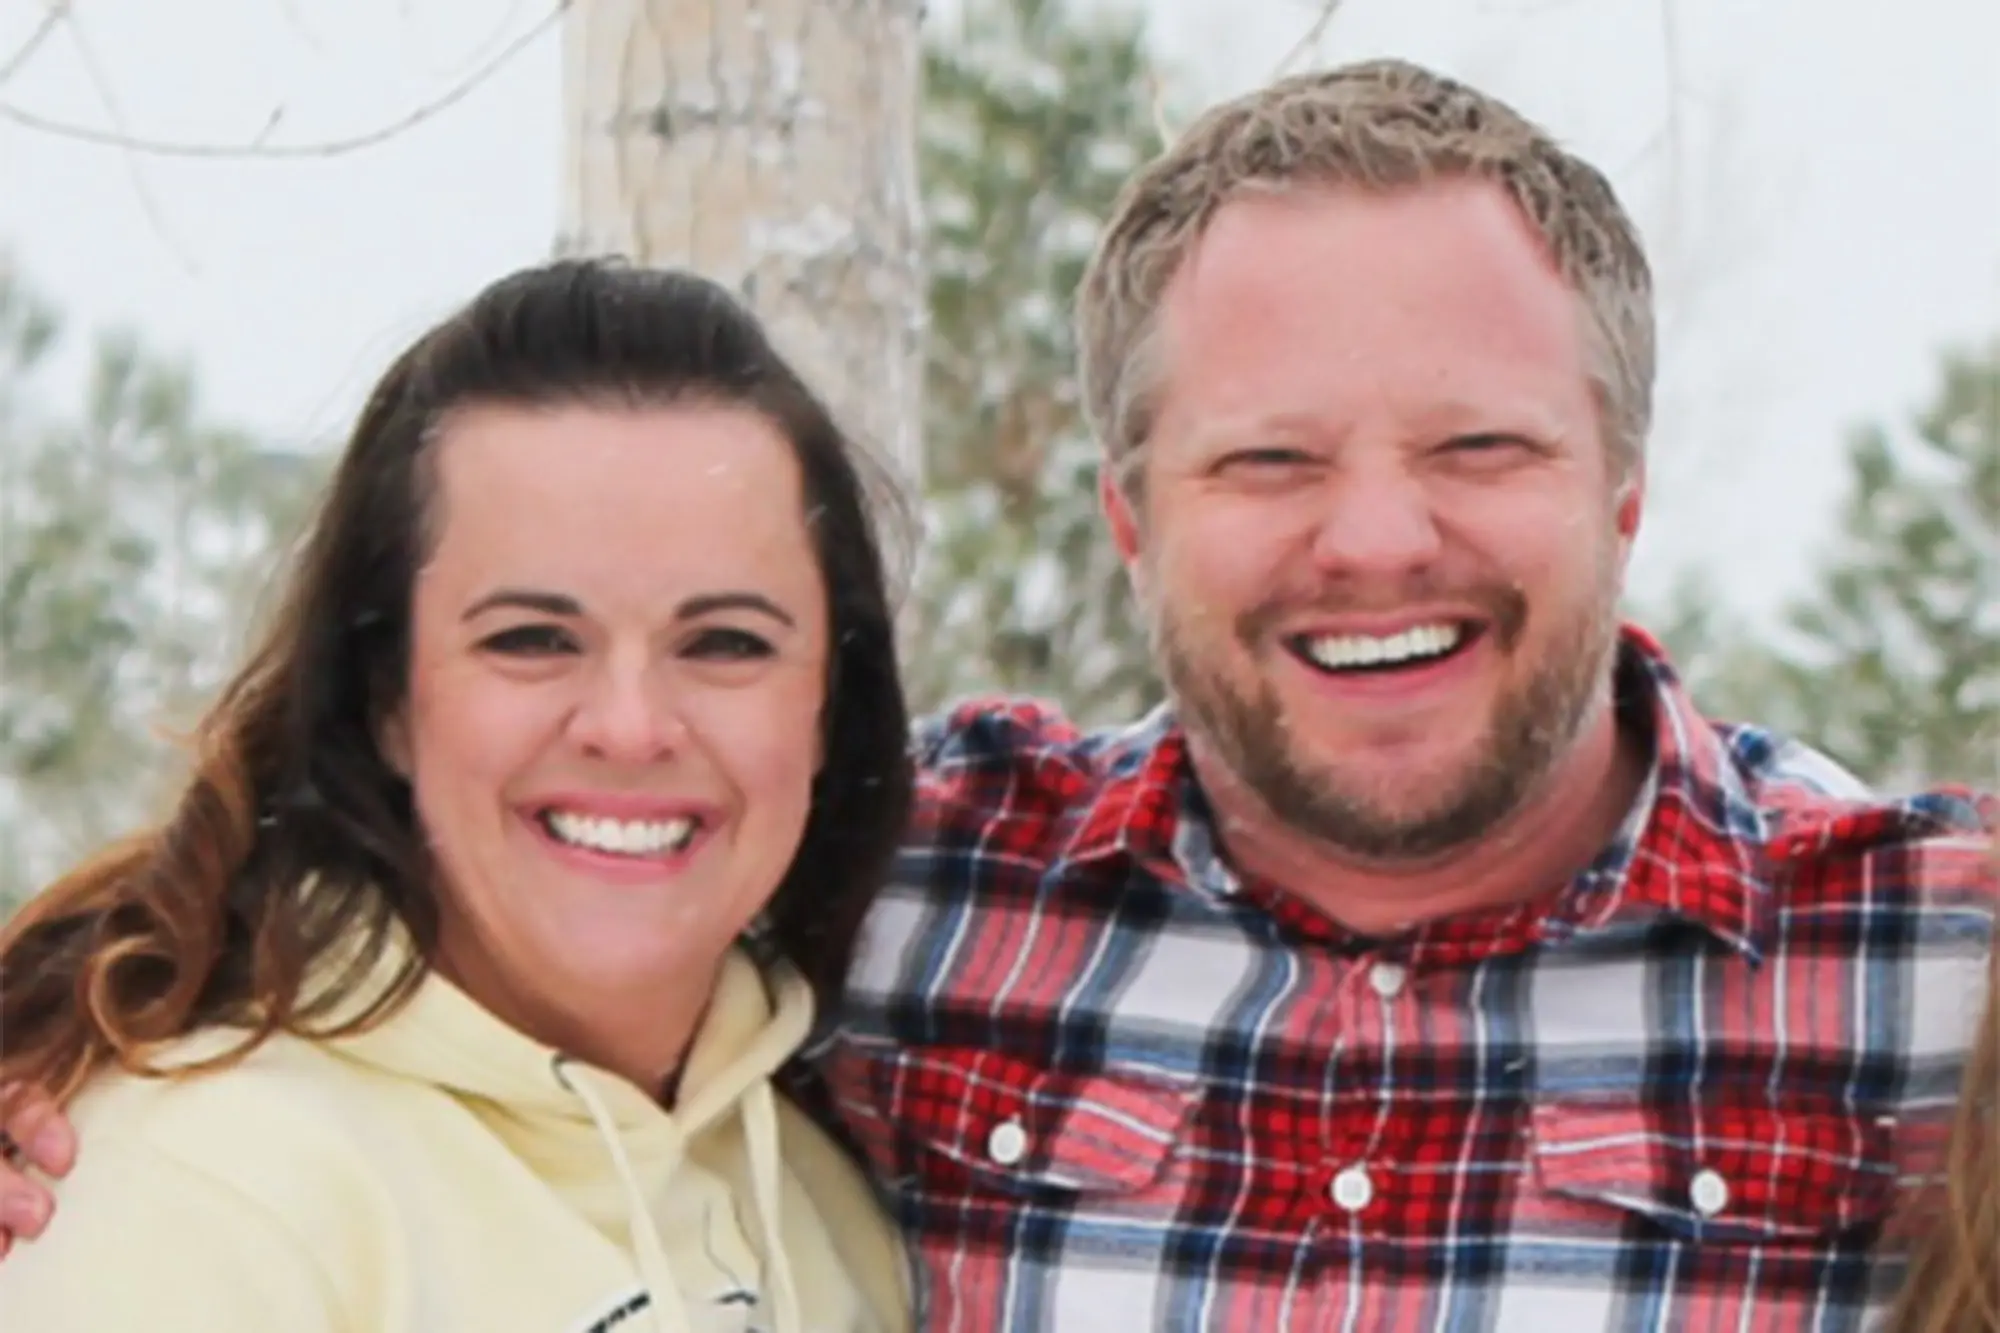 James Toliver Craig, Aurora Colorado dentist poisons wife